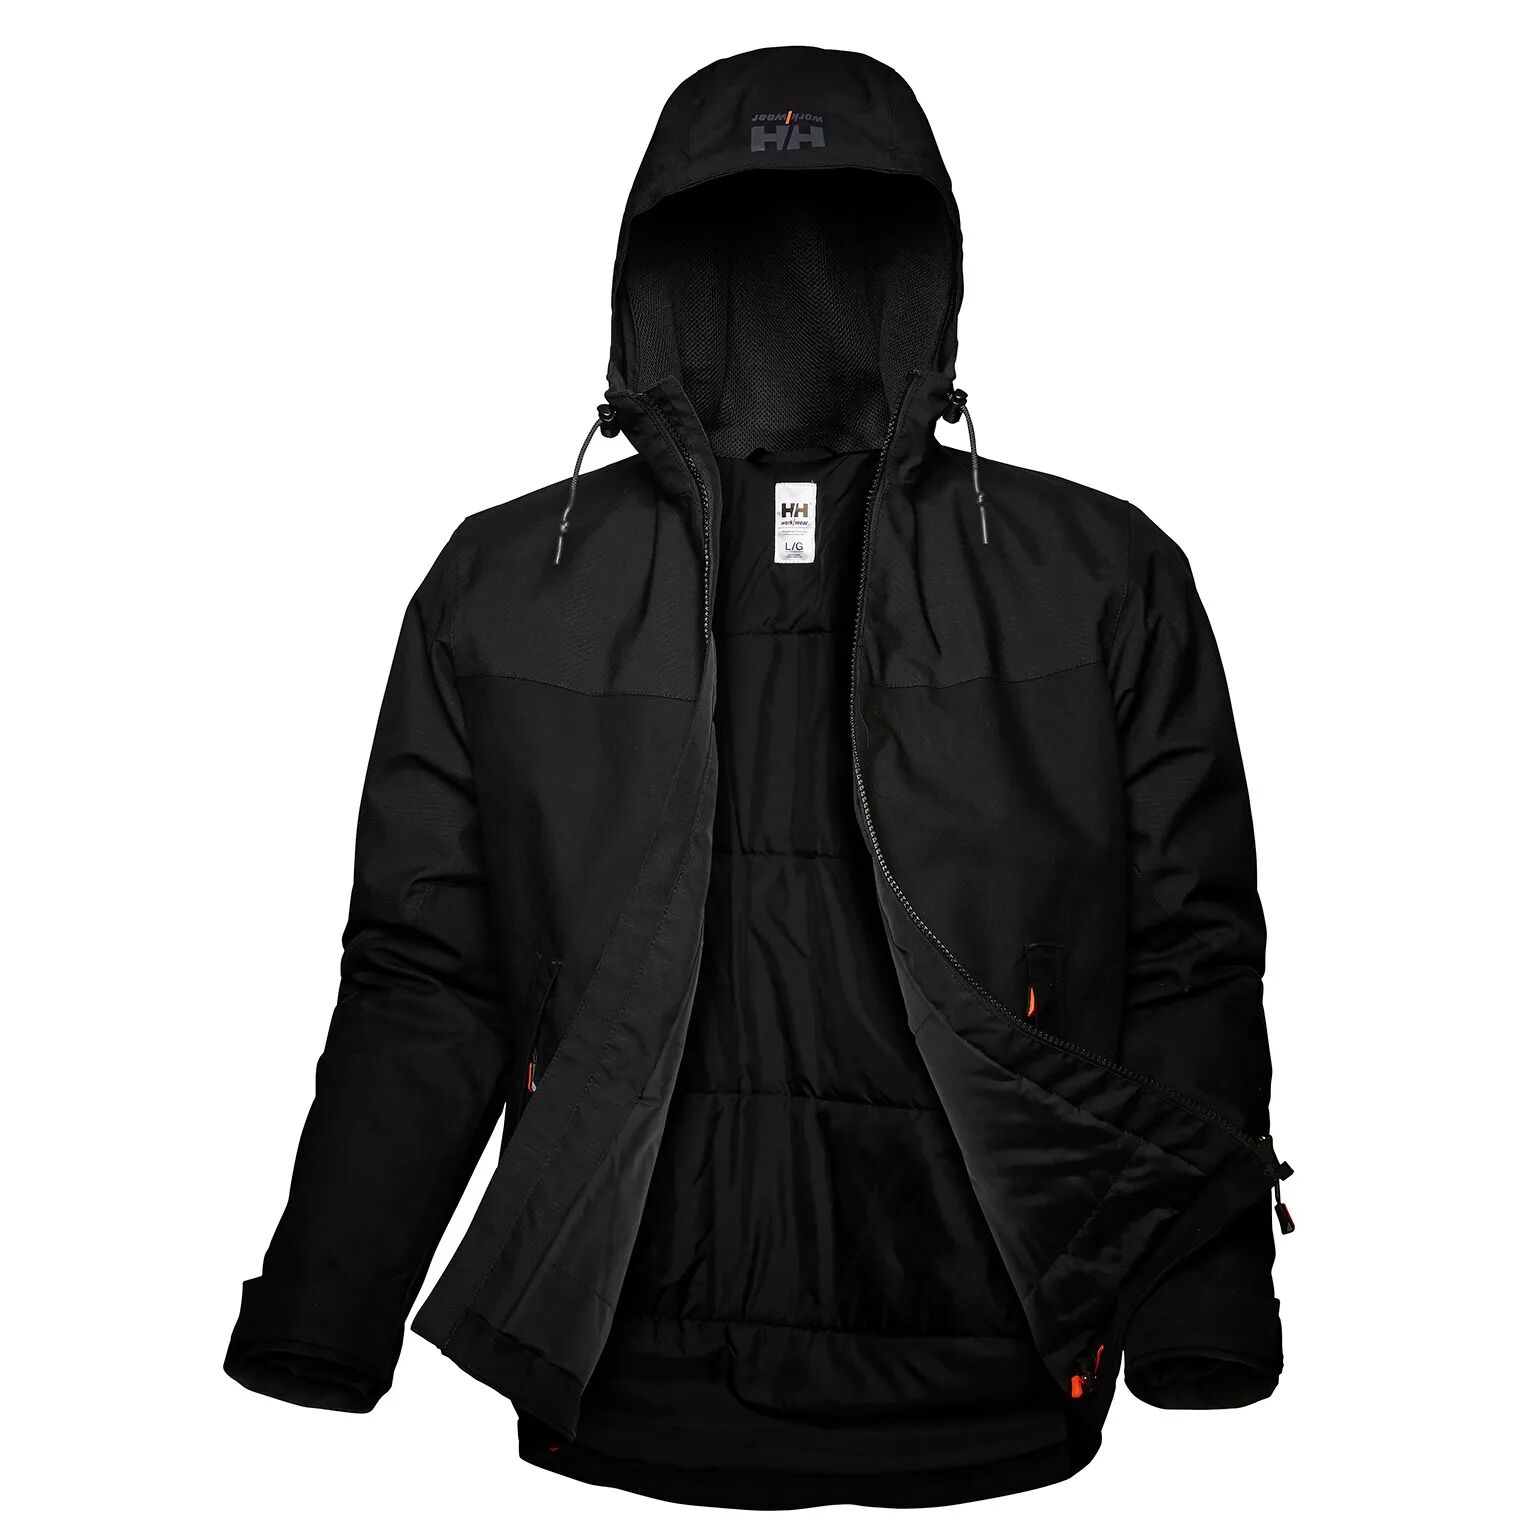 HH Workwear Helly Hansen WorkwearOxford Primaloft Insulated High Performance Winter Jacket Black XS